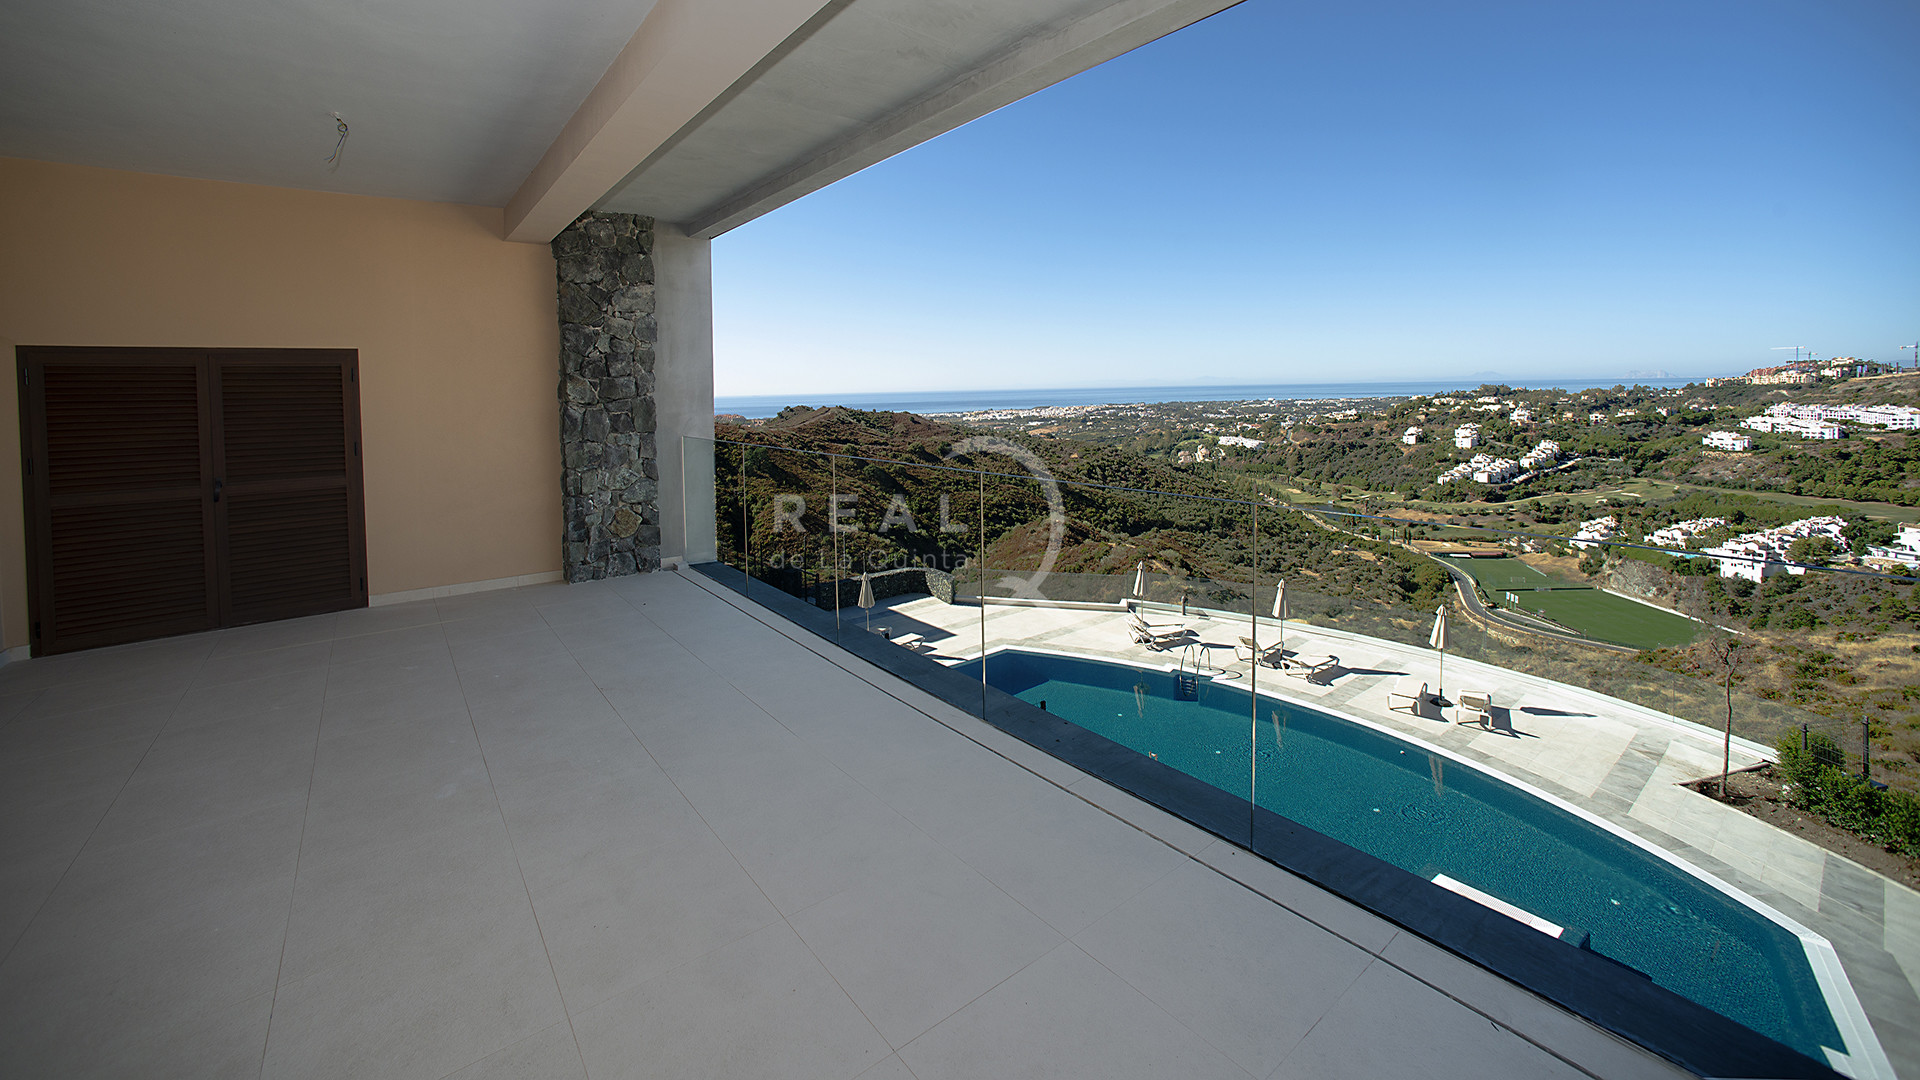 Olivos: Amazing views and exclusives apartaments in Marbella